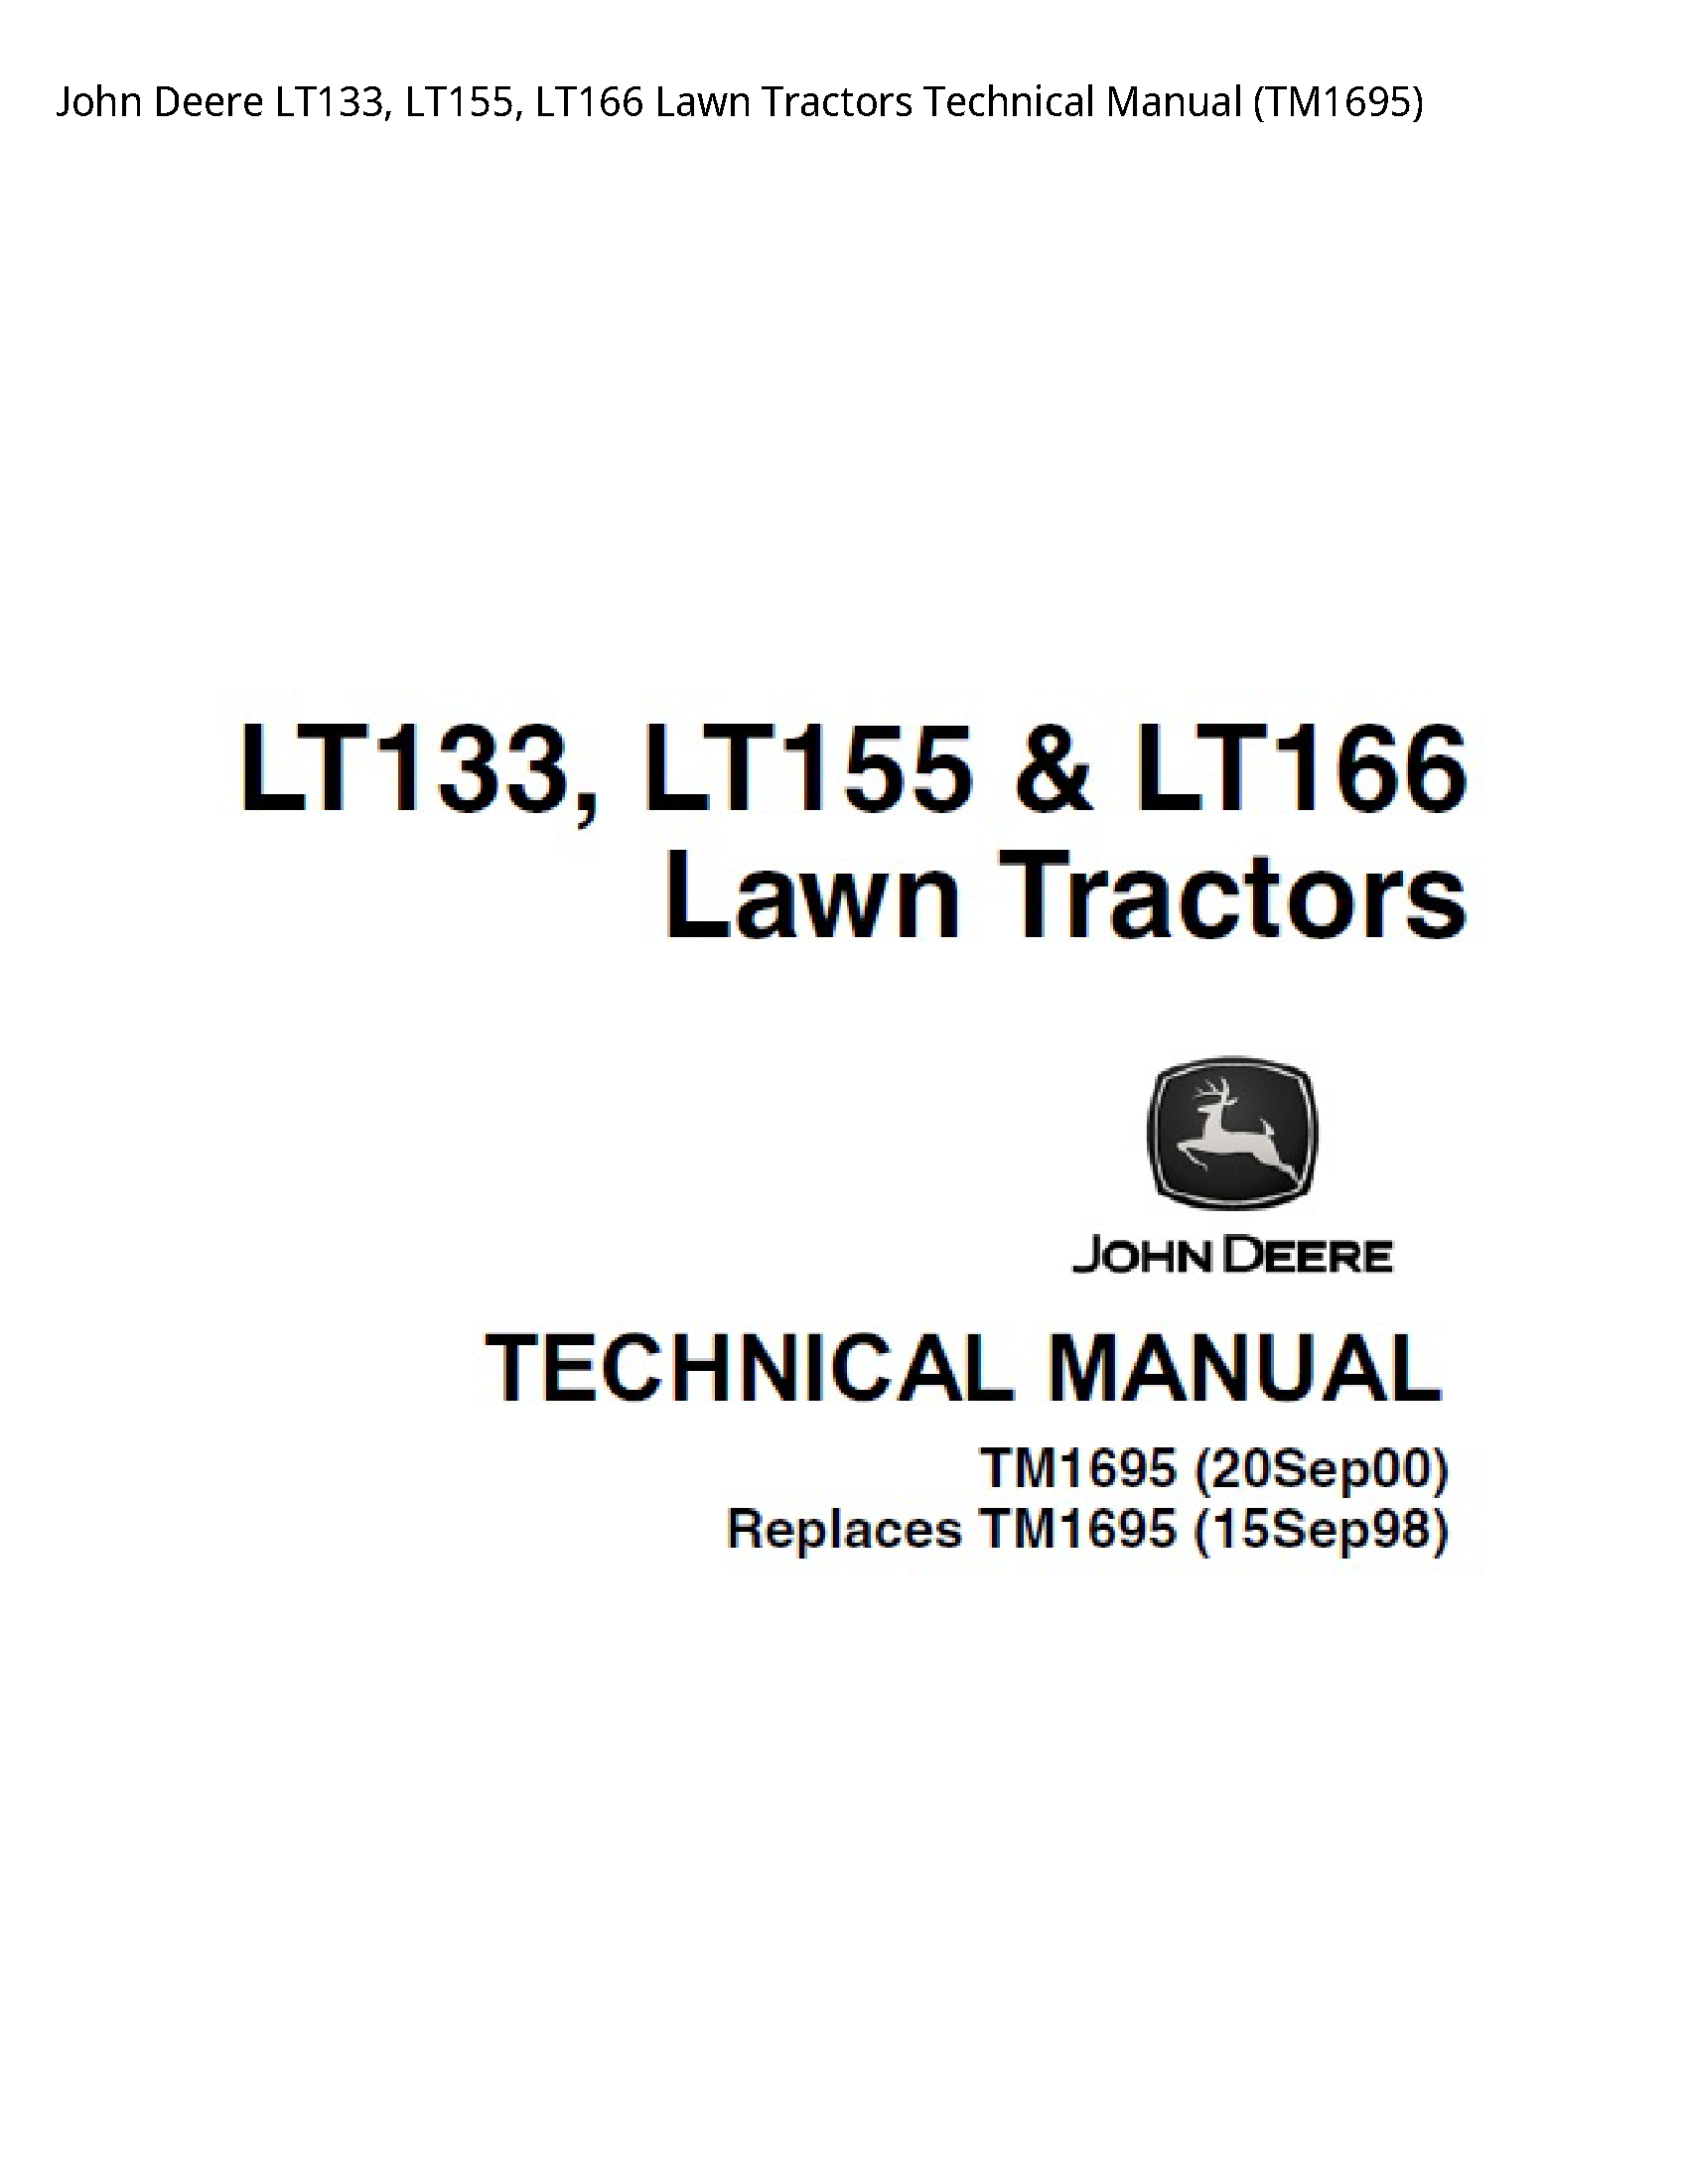 John Deere LT133 Lawn Tractors Technical manual